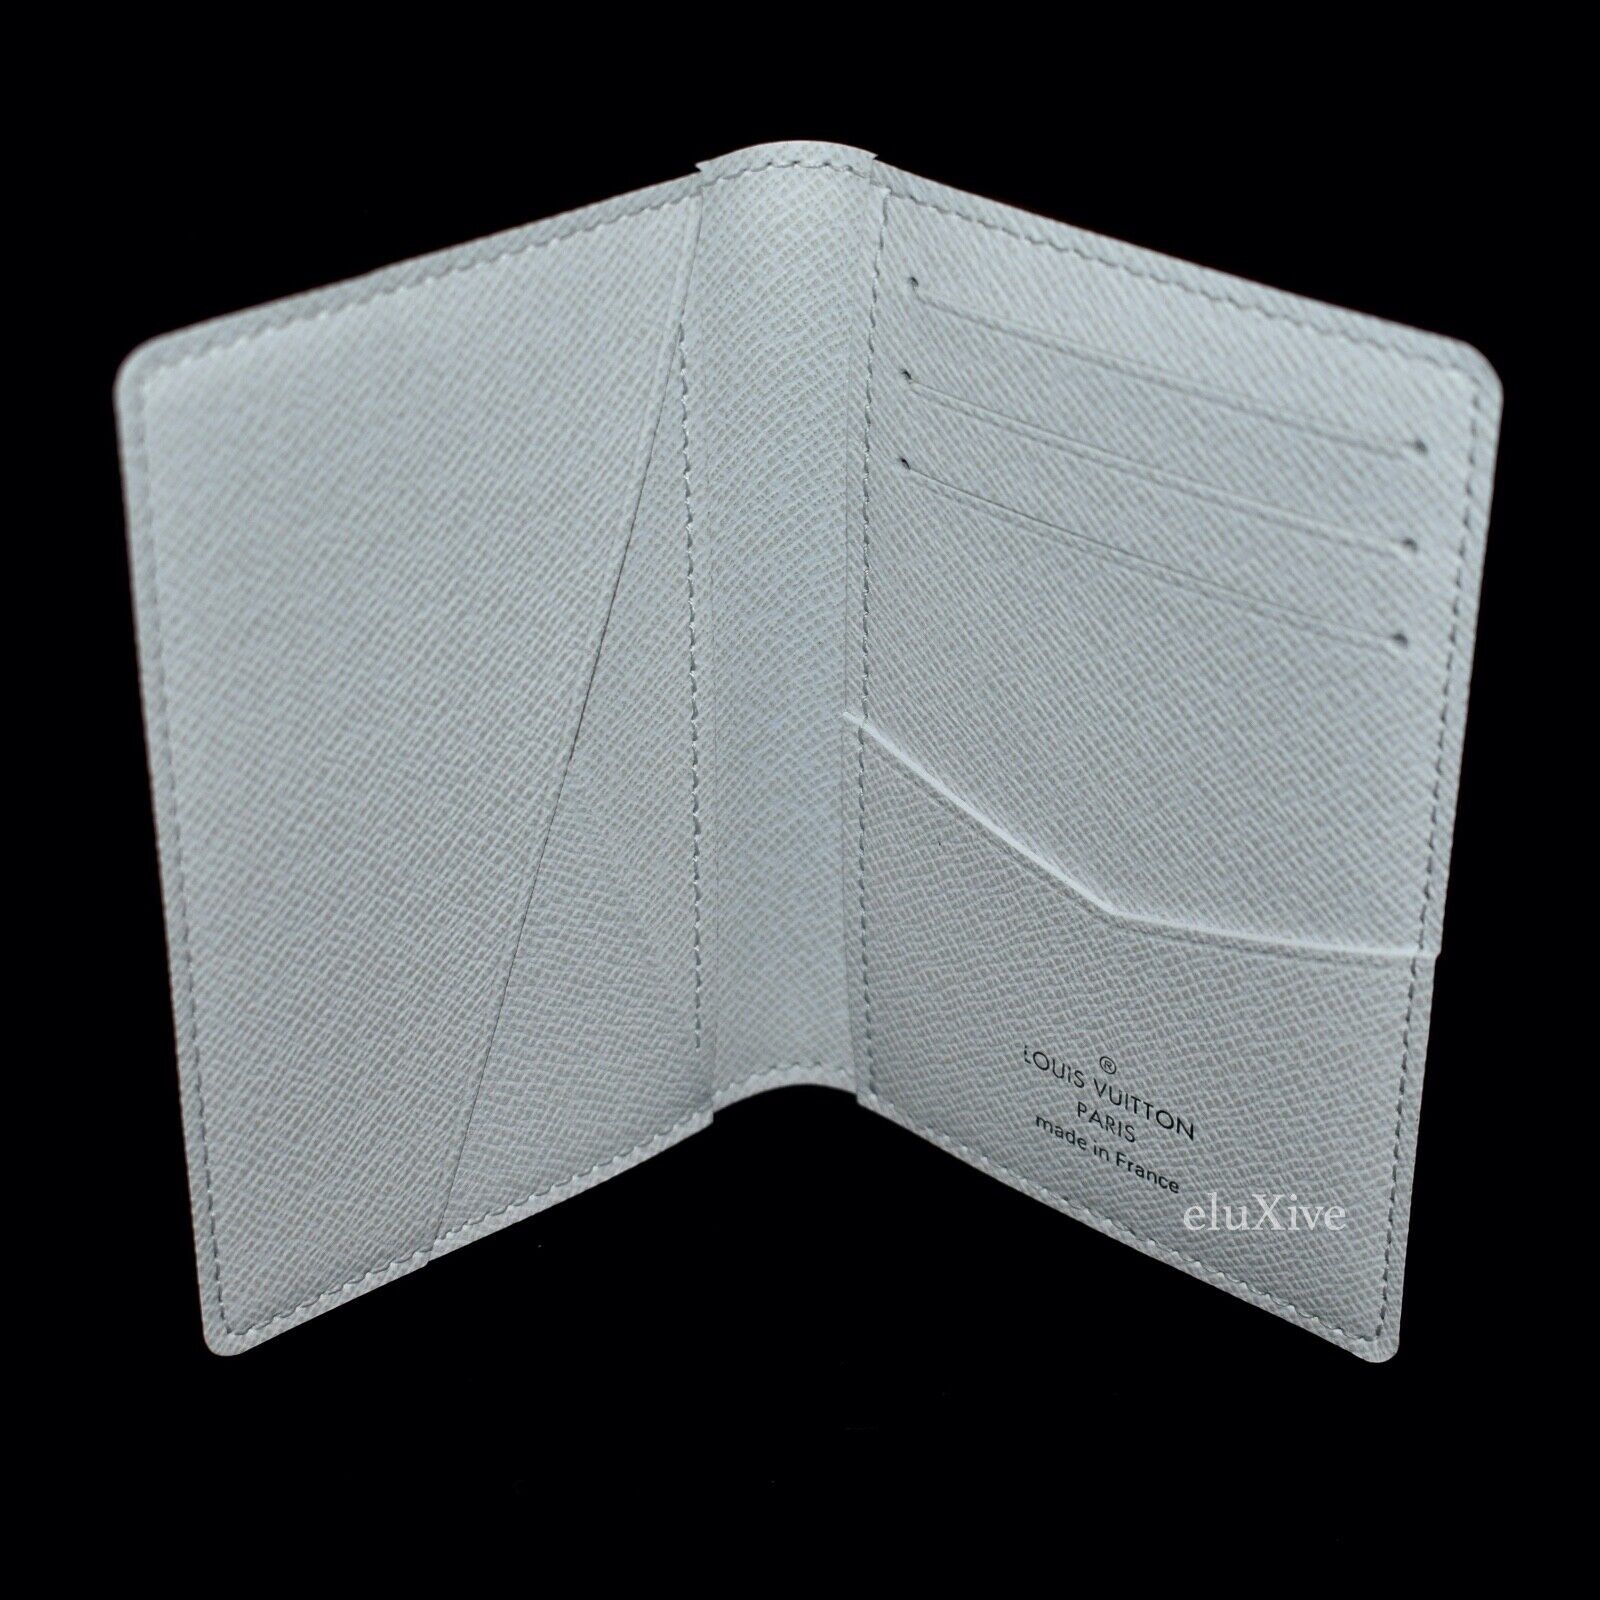 Louis Vuitton - Taigarama Monogram Pocket Organizer (Miami Green